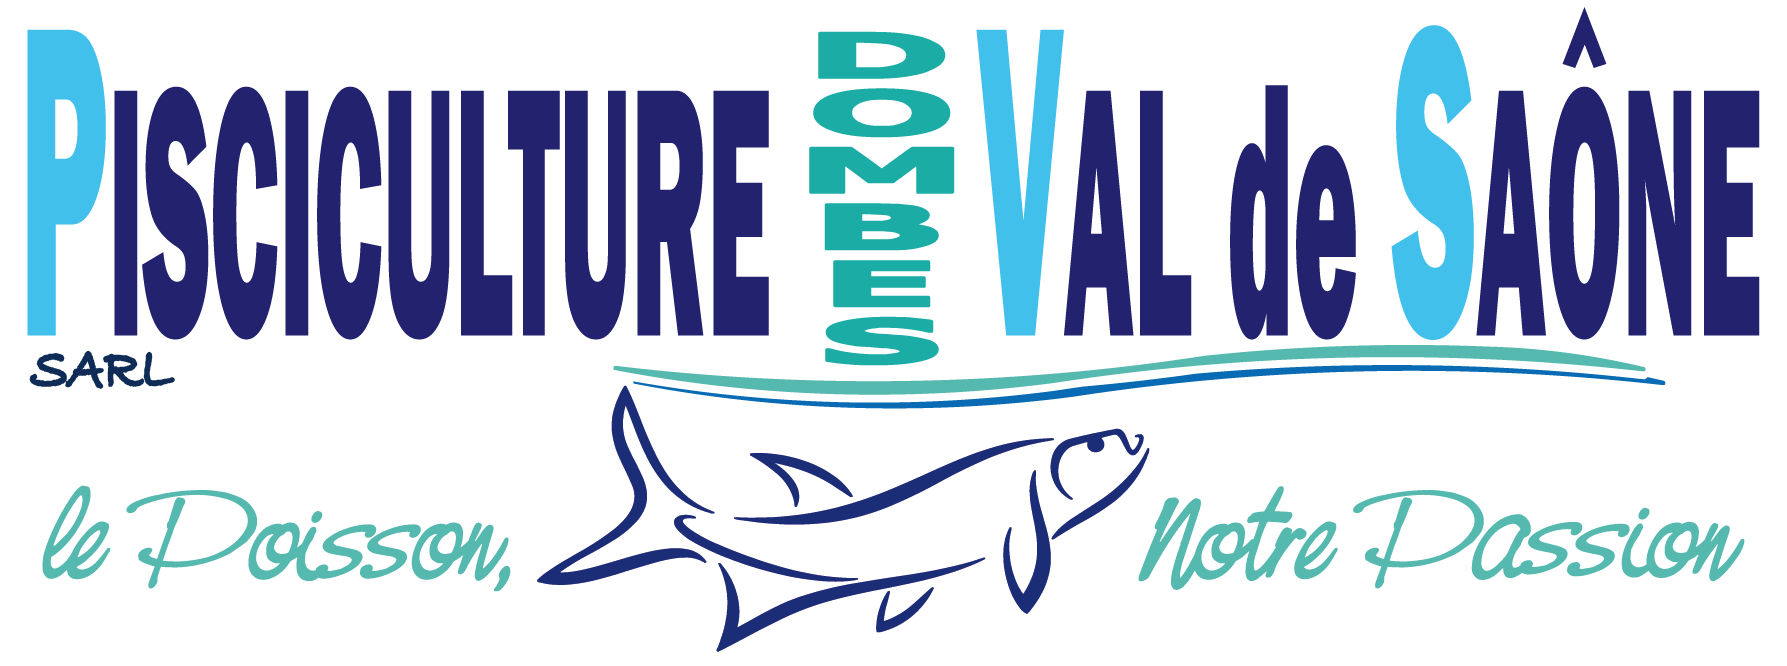 Logo pisciculture 2021 3